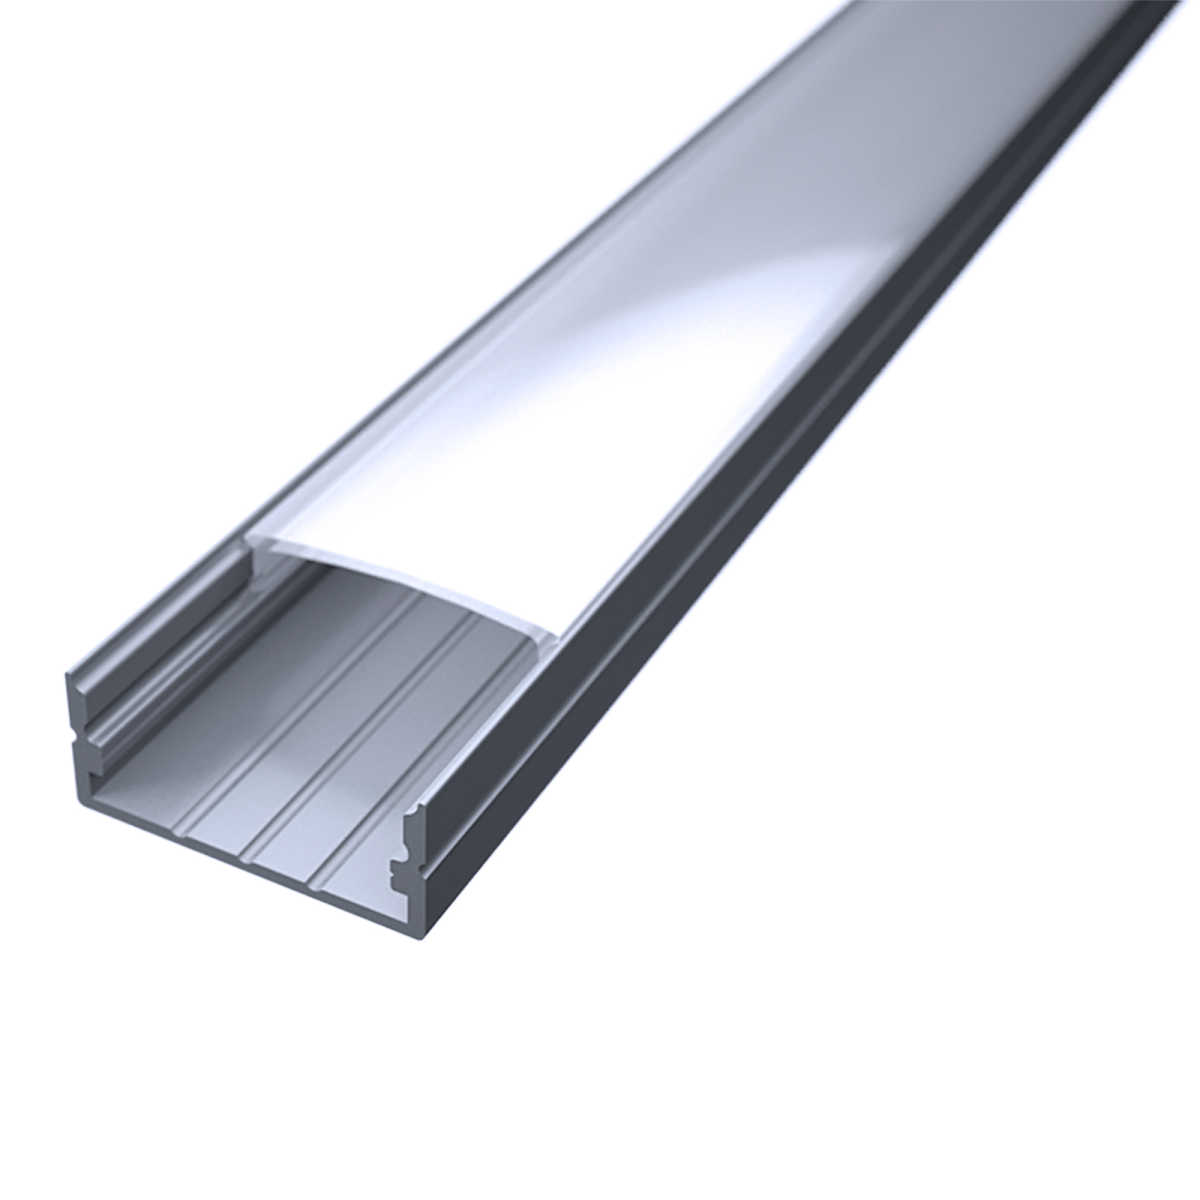 LED Flachprofil "Slim-Line max" | Abdeckung diffus | Zuschnitt auf 24cm |